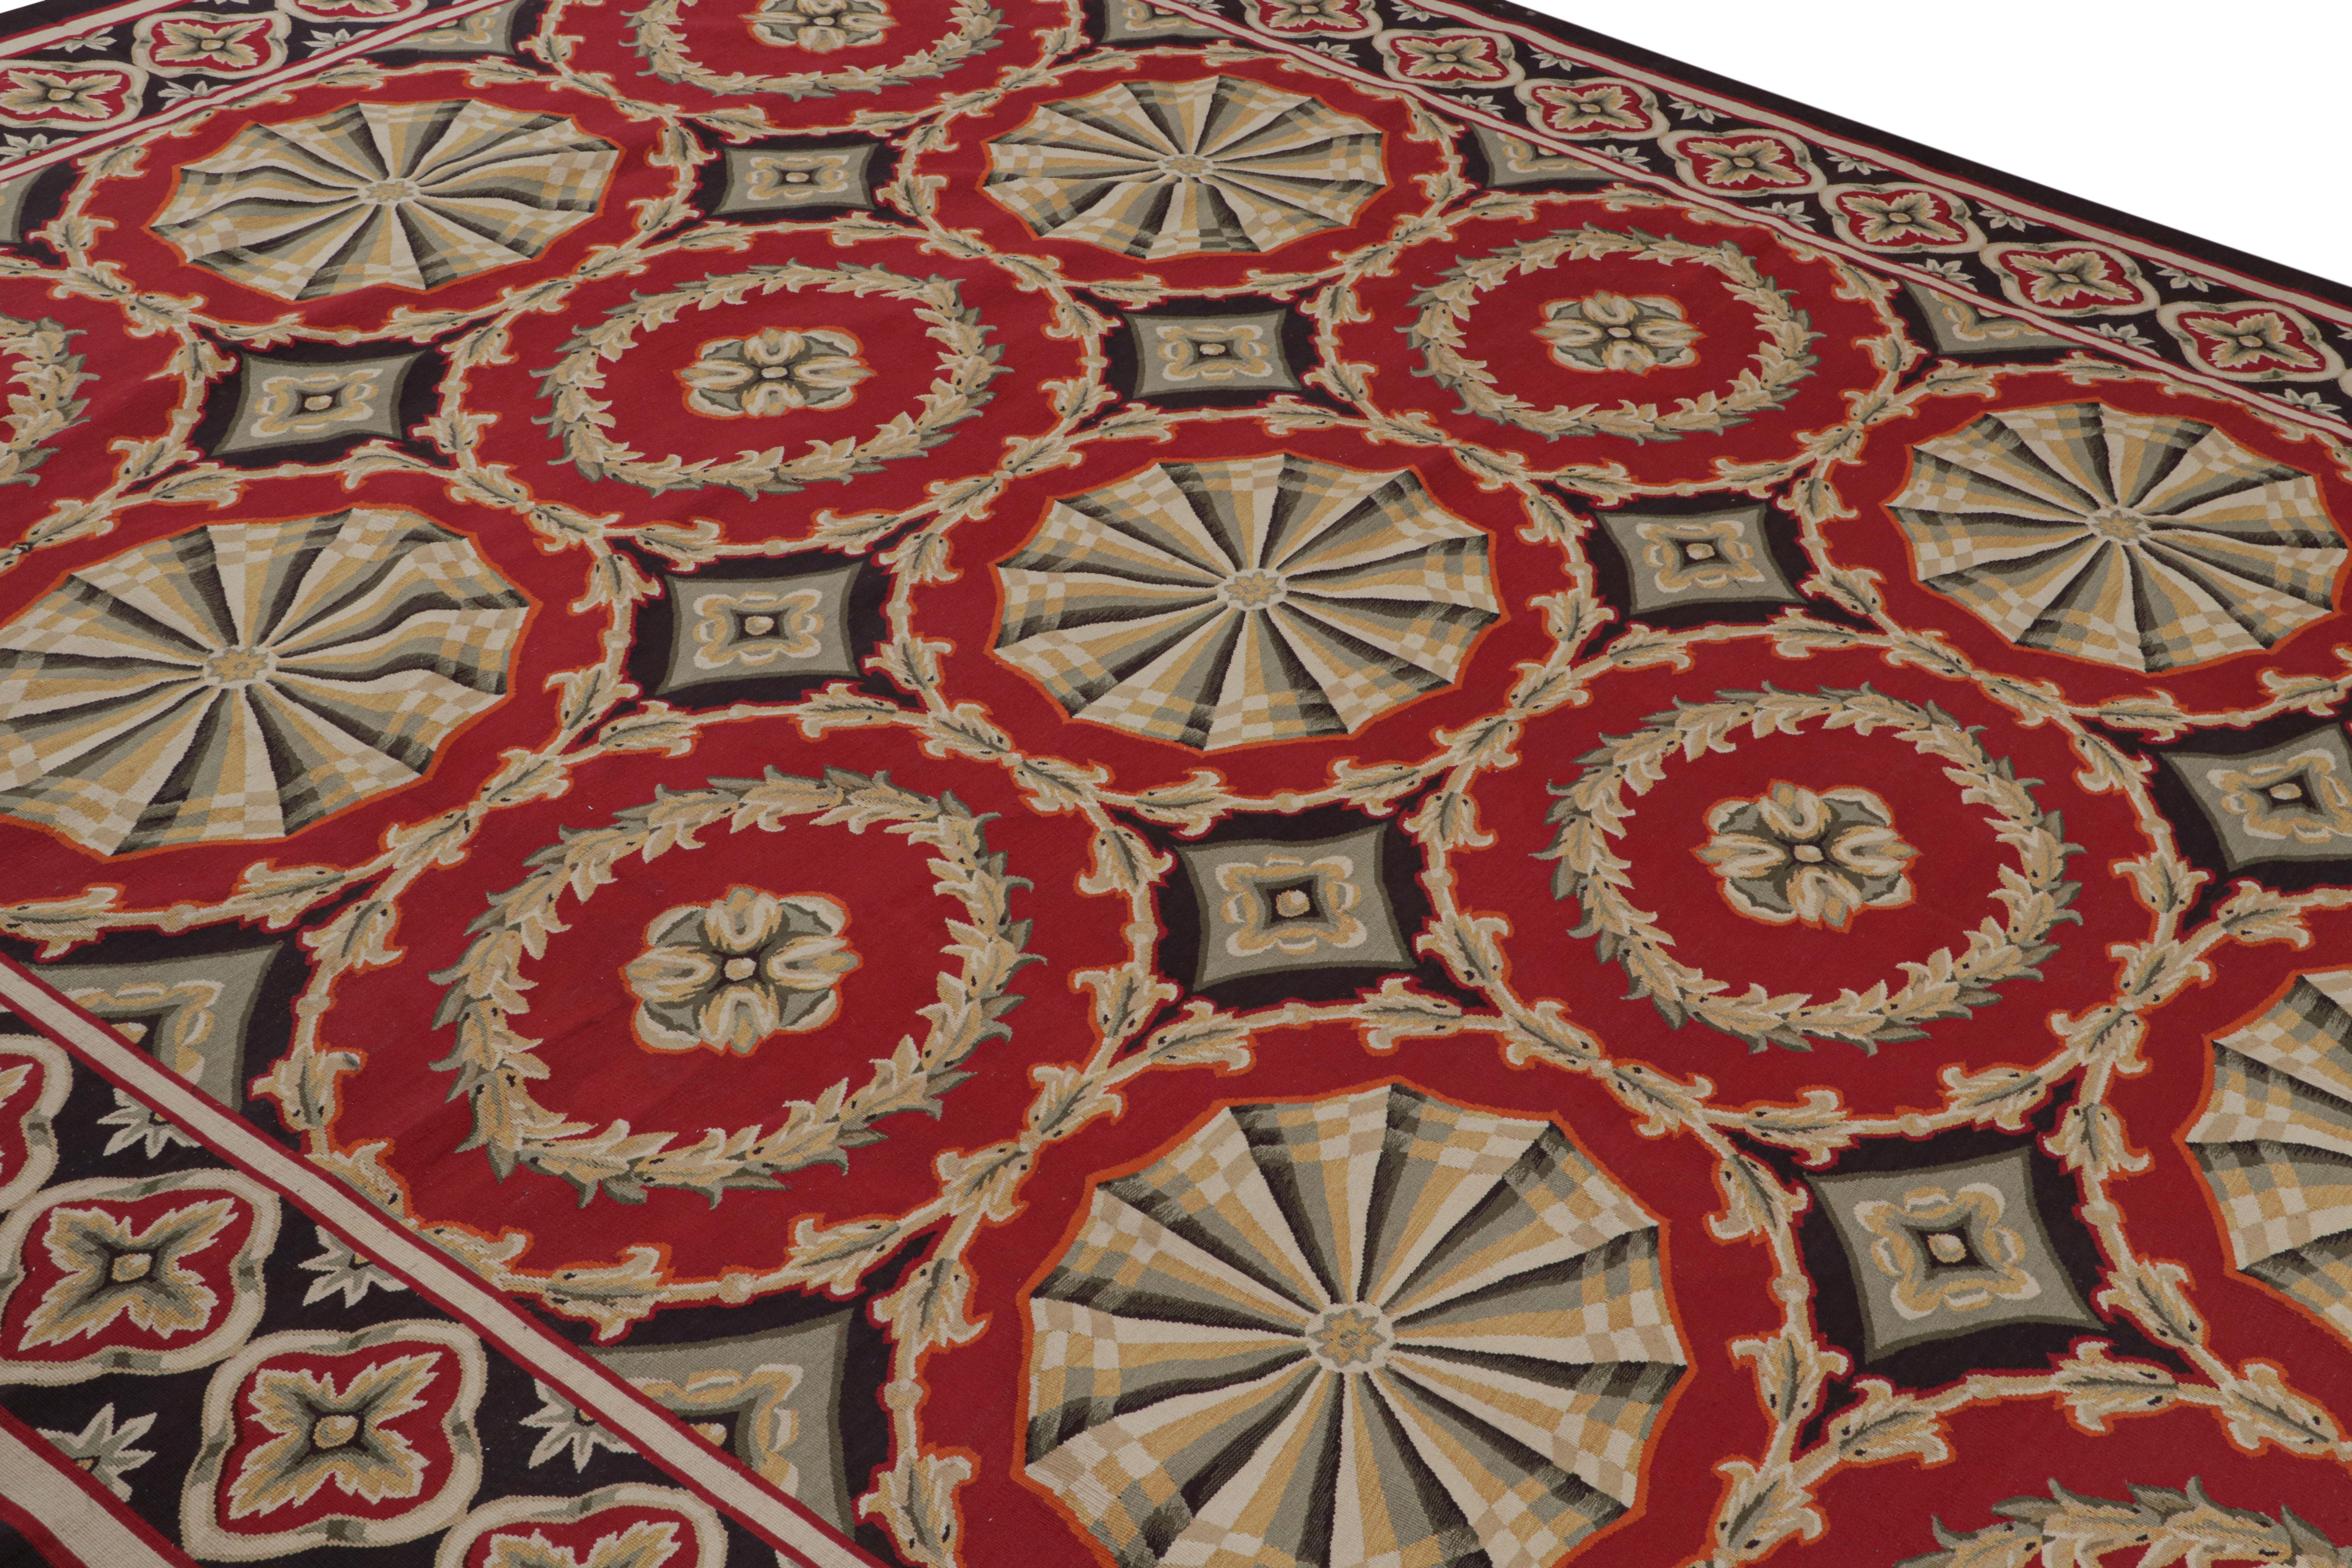 Tissé à la main en laine, ce tapis 9x11 est une nouveauté de la collection de tapis européens de Rug & Kilim - l'une de ses premières œuvres, inspirée par les tapis et tapisseries antiques d'Aubusson. 

Sur le design : 

Les admirateurs de